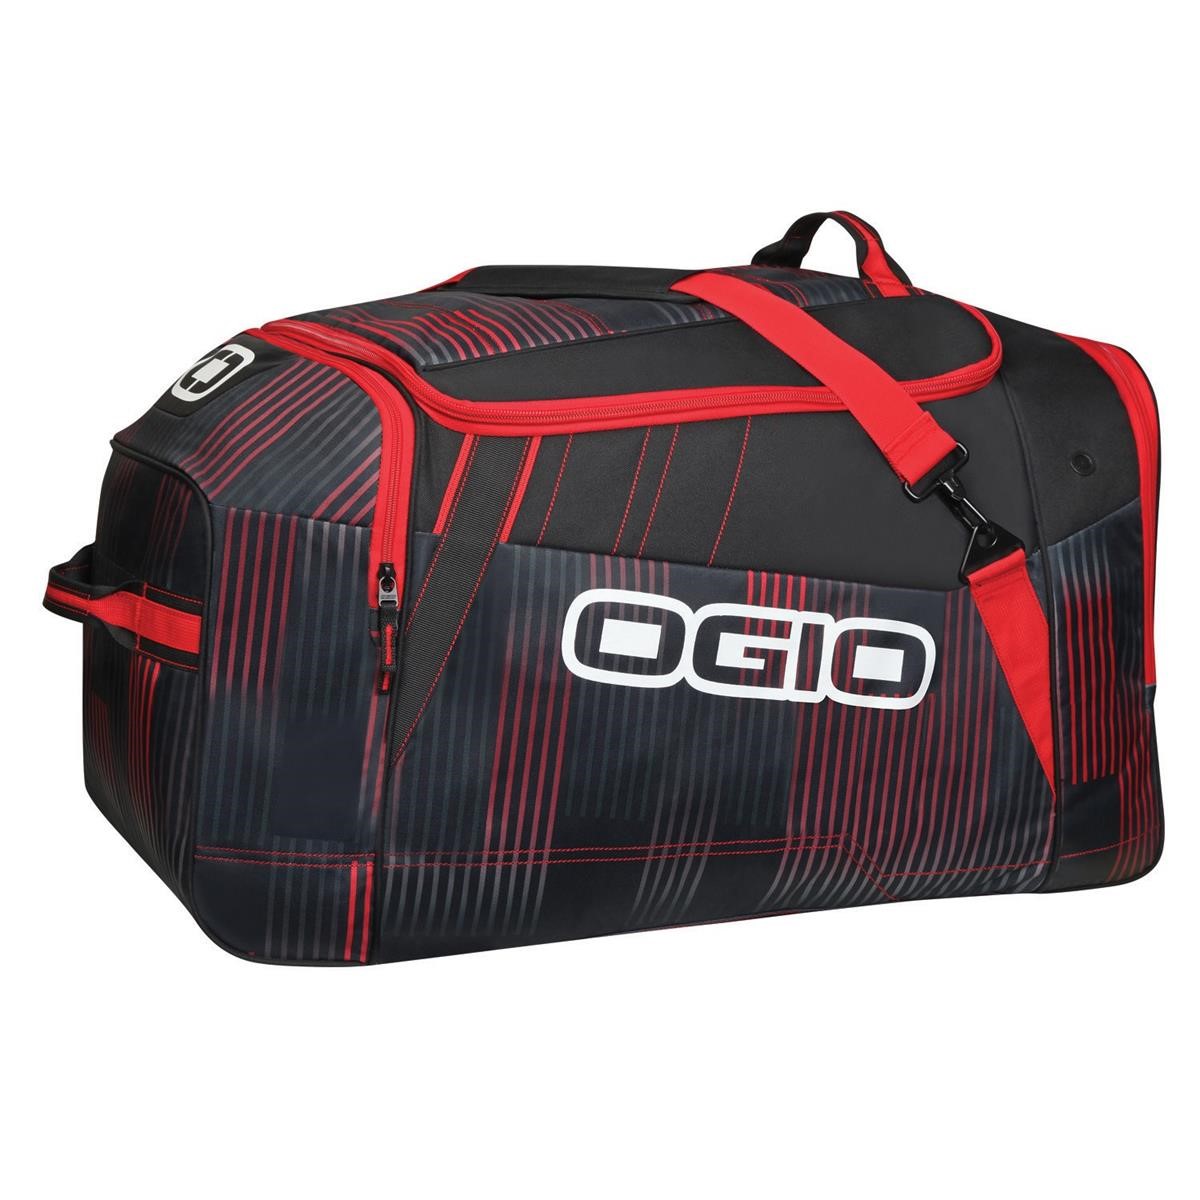 Ogio Travel Bag Slayer Stoke, 125 Liter